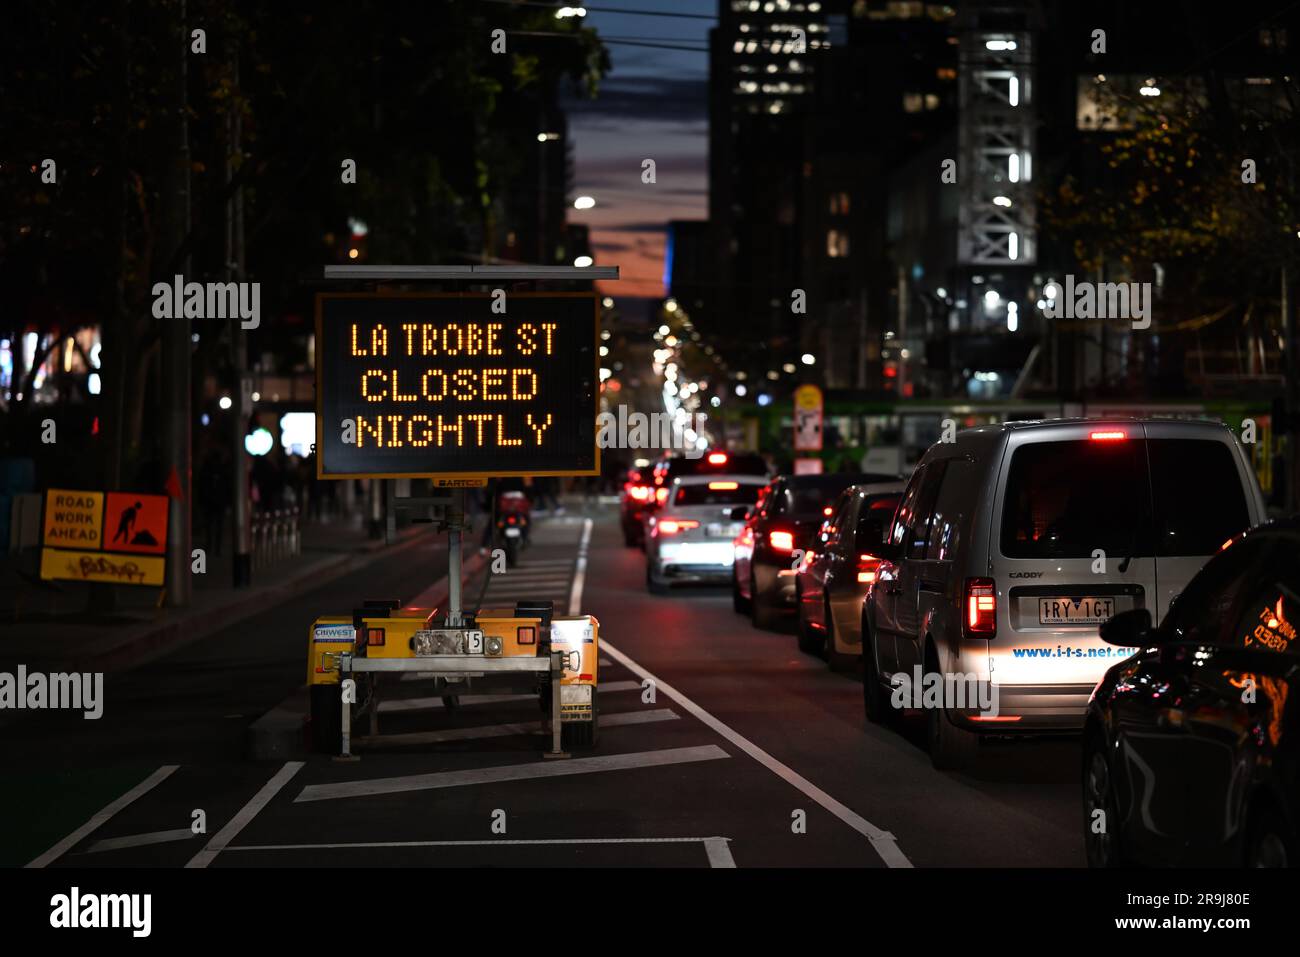 Il traffico in direzione ovest si fermava su la Trobe Street vicino a un cartello segnaletico di chiusure notturne delle strade, nelle prime ore della sera d'inverno Foto Stock